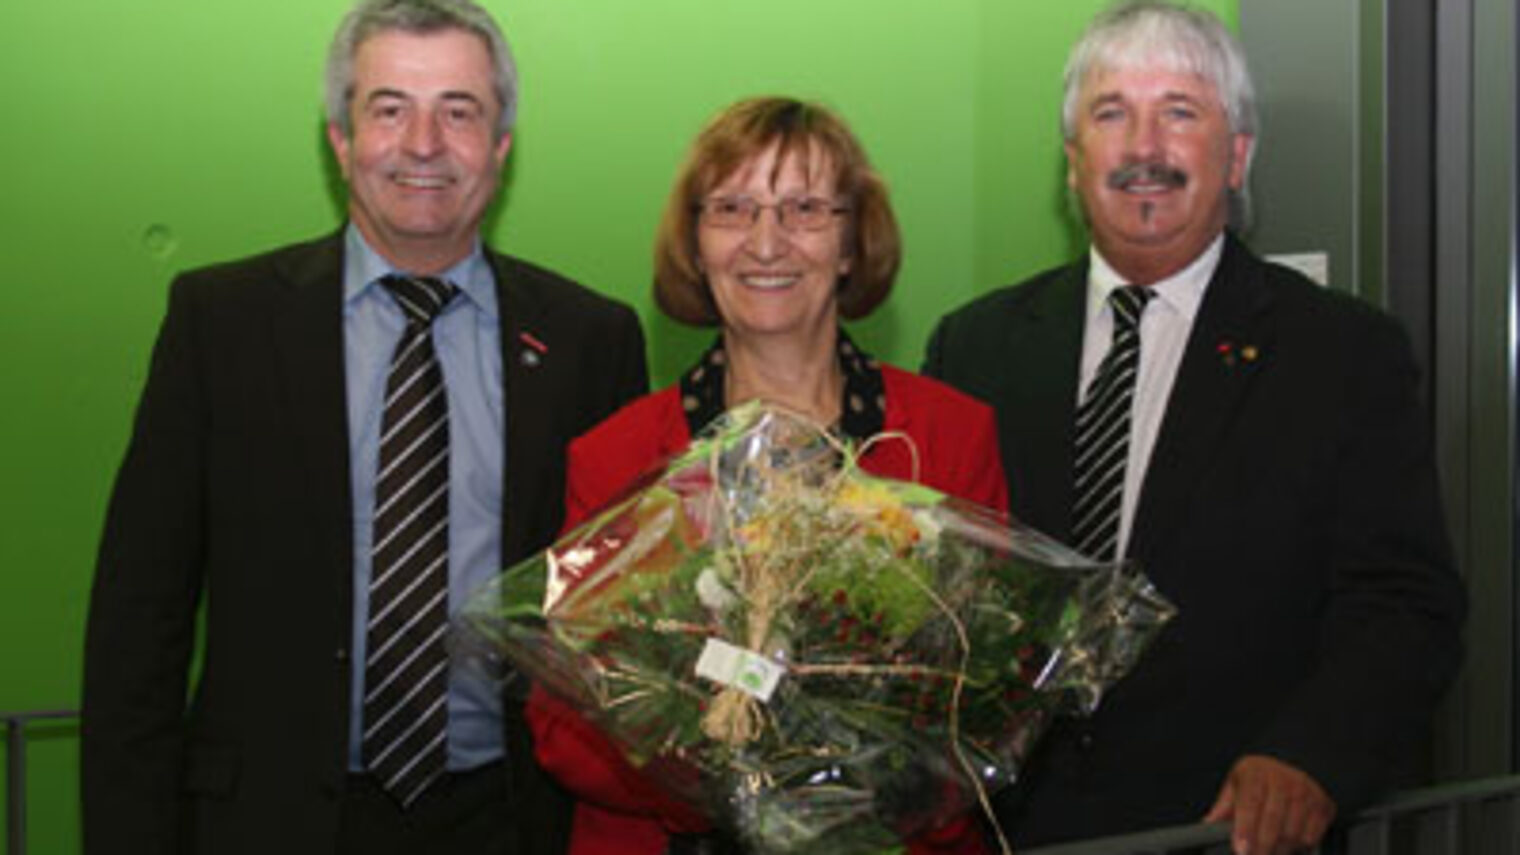 Foto: Präsidium (von links nach rechts): Dieter Schnitzer, Brigitte Mannert, Michael Lehnert